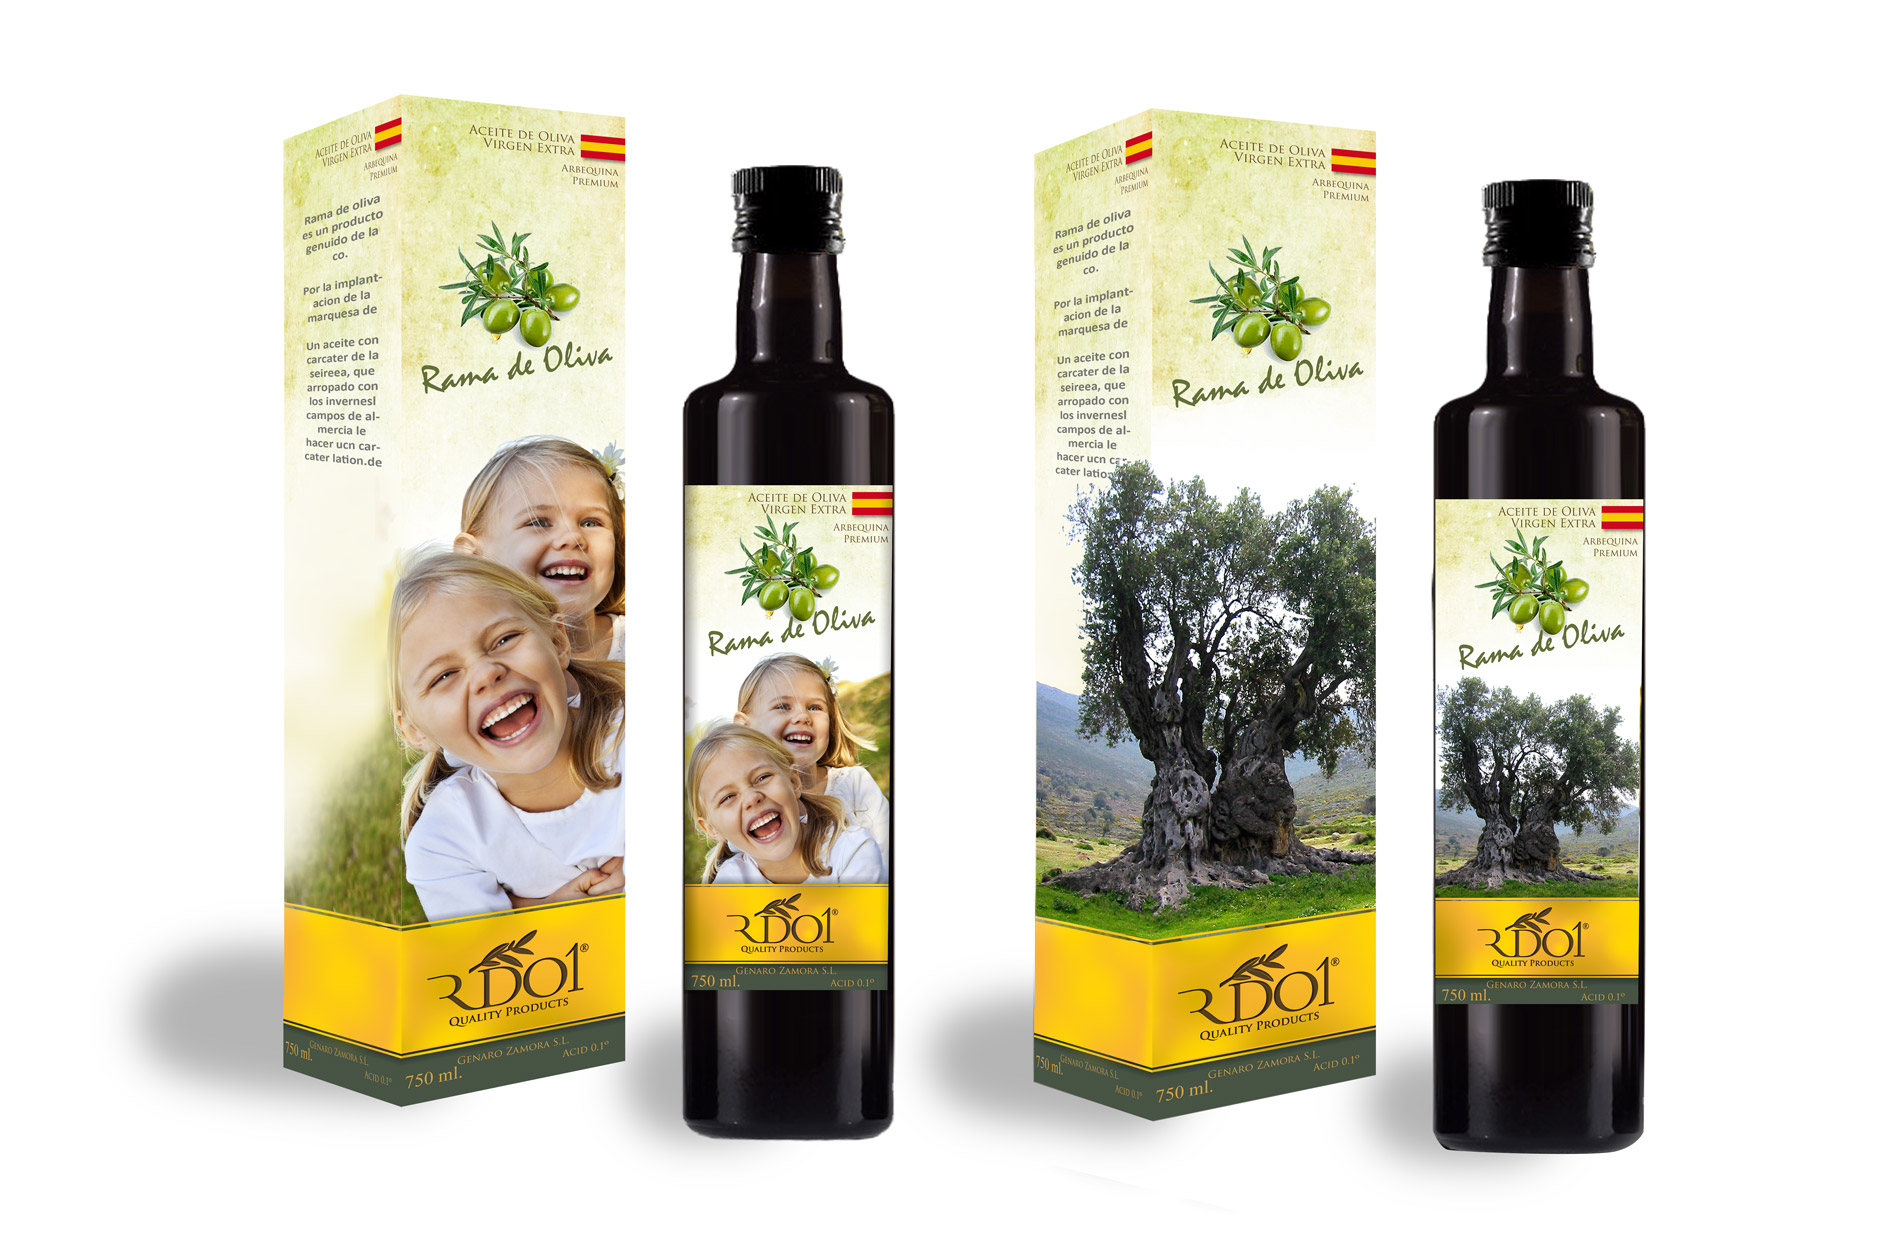 Diseño gráfico y creativo de etiquetas de aceite de oliva virgen extra para la marca RDO1 con exportación a China